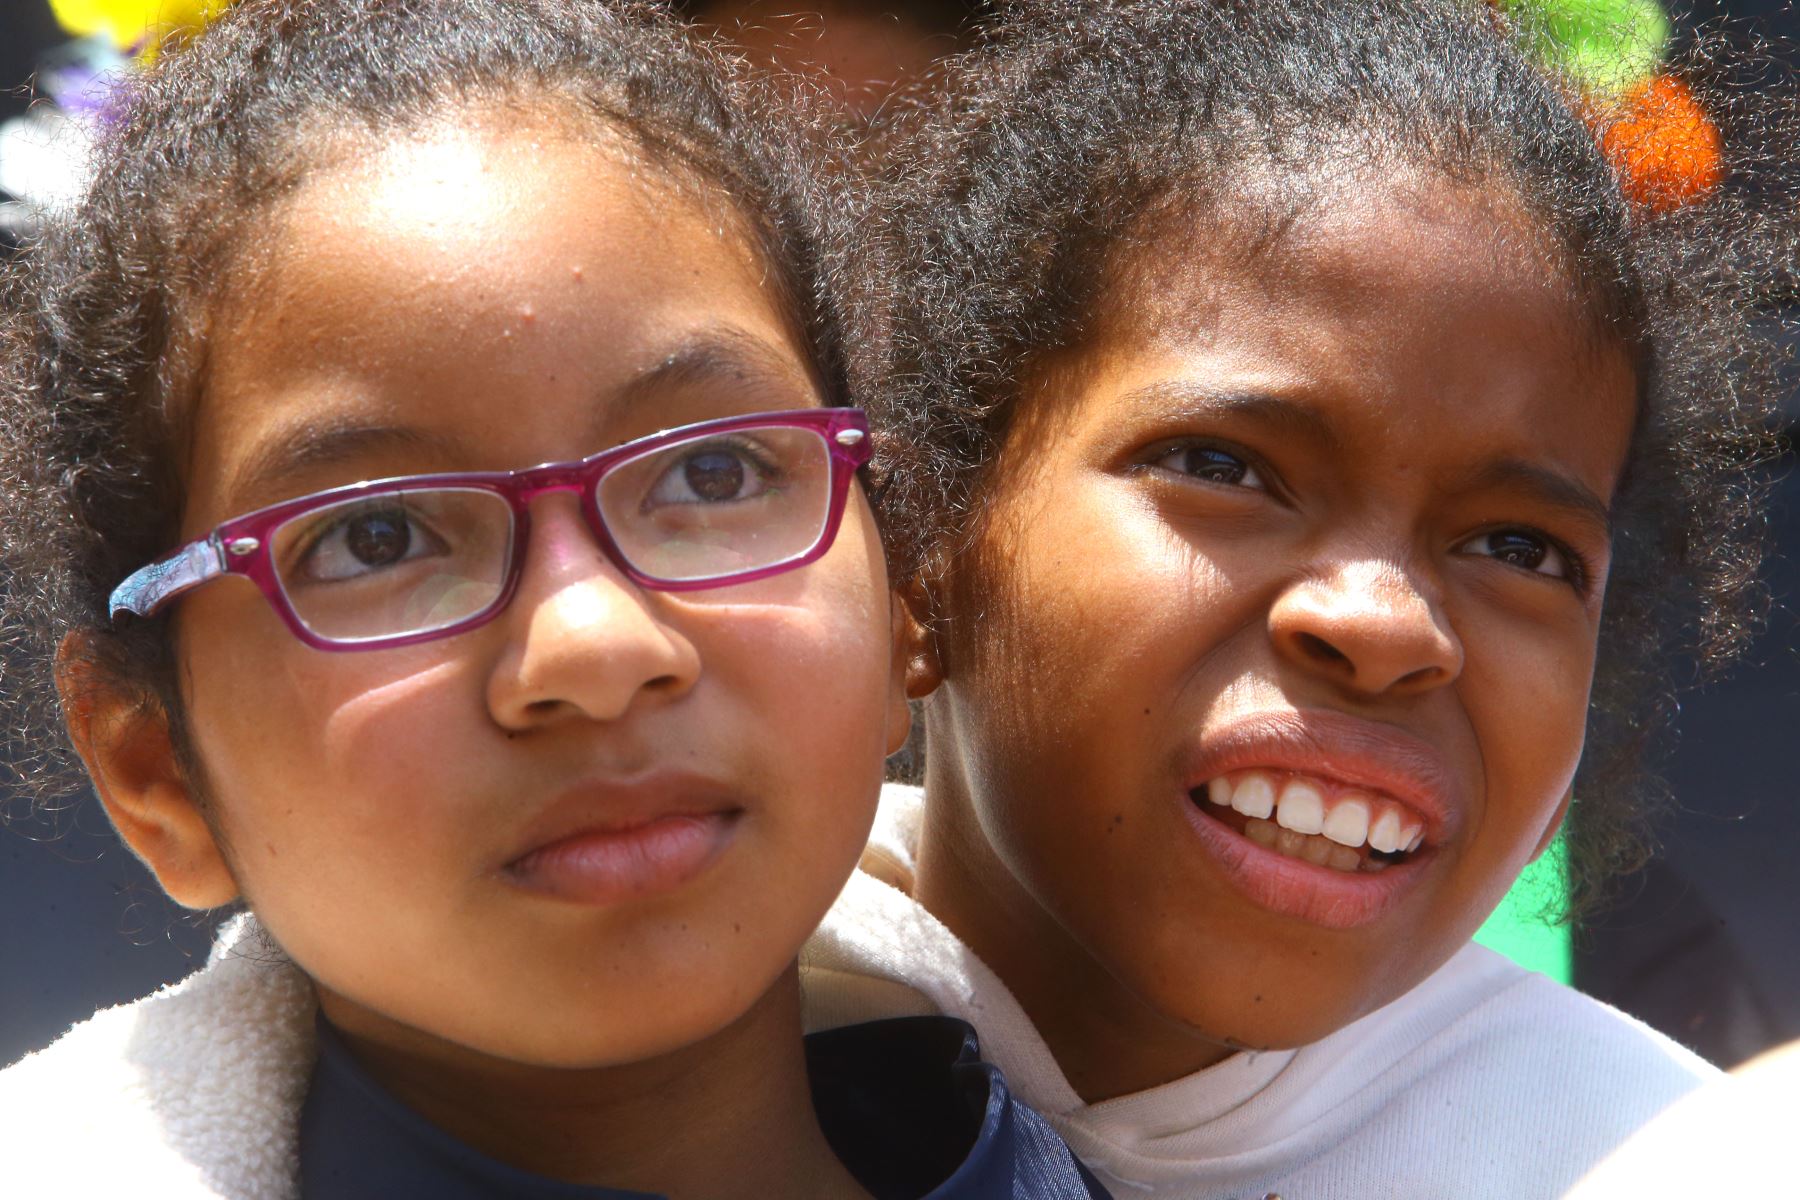 56 niños y niñas de pueblos originarios, afroperuanos y de otras tradiciones culturales, participantes del “Tinkuy 2017”, visitaron Palacio de Gobierno. Foto: ANDINA/Prensa Presidencia